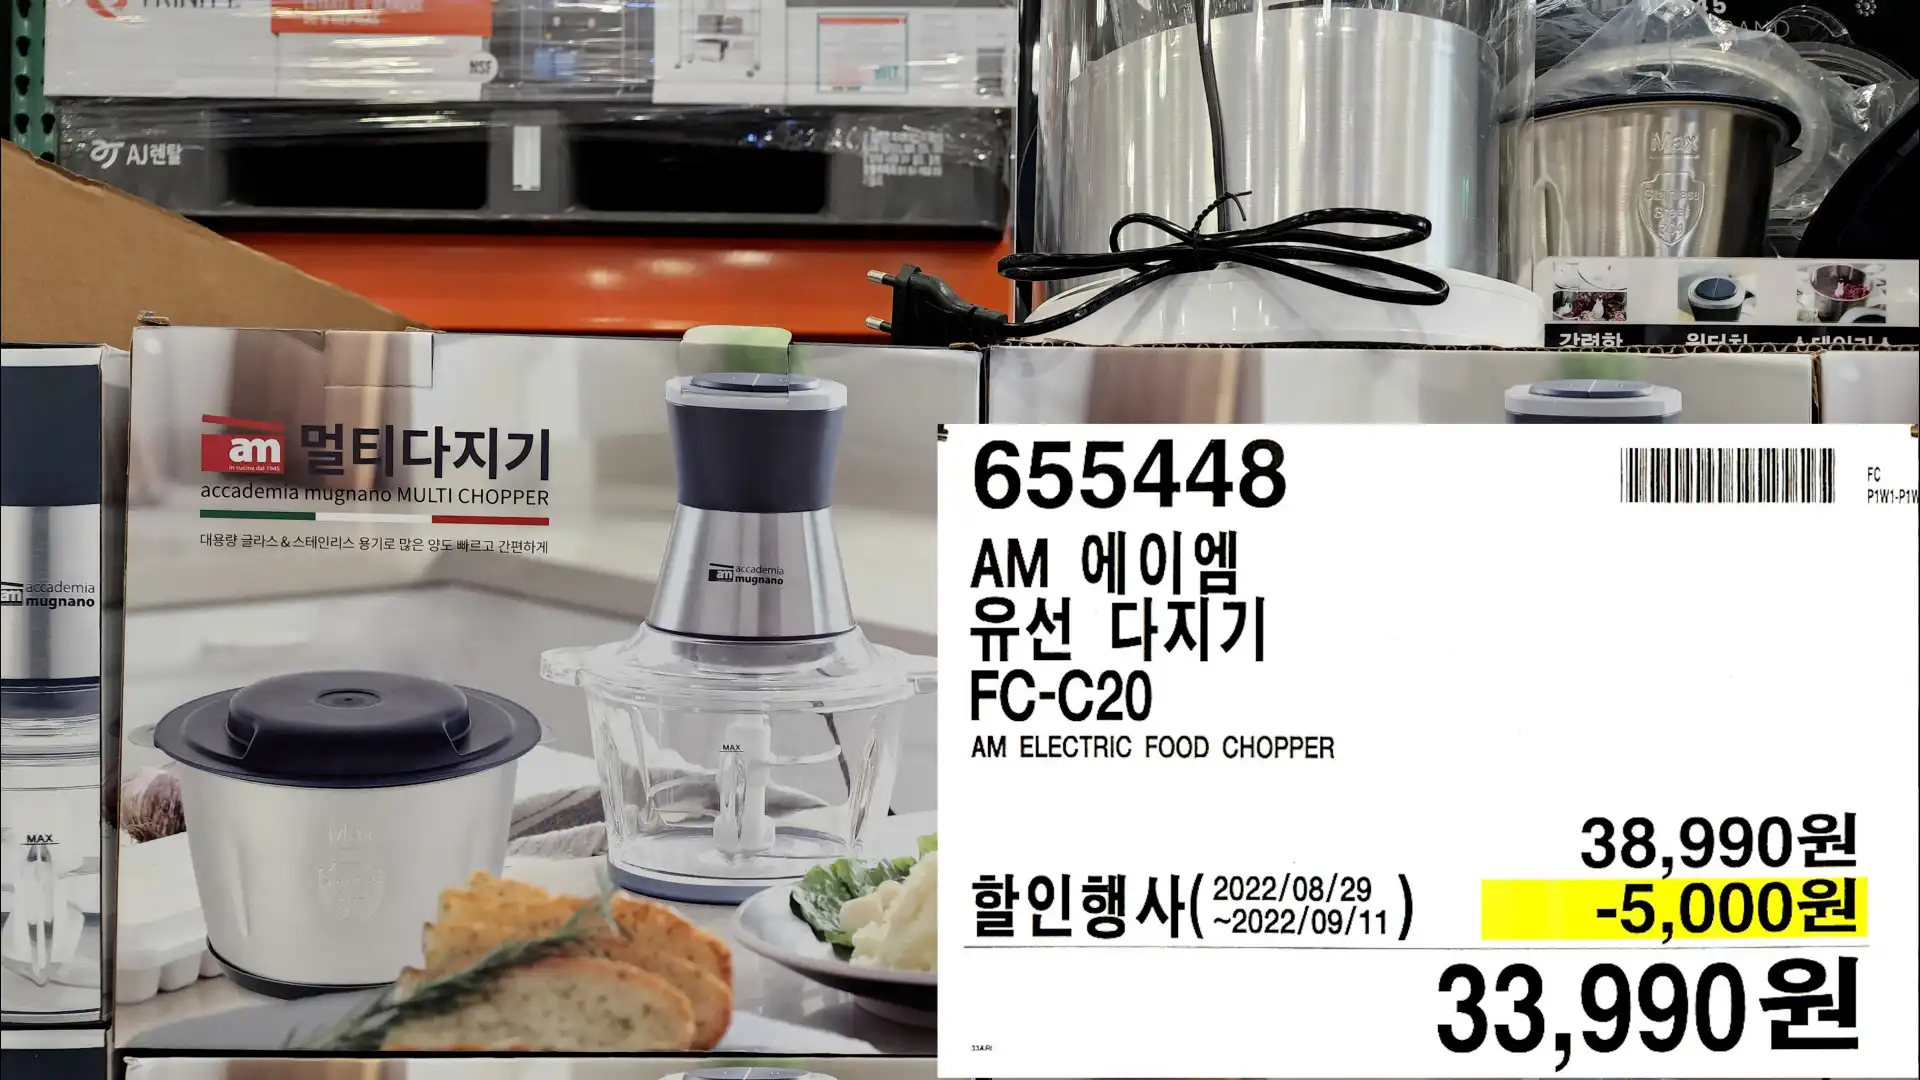 AM 에이엠
유선 다지기
FC-C20
AM ELECTRIC FOOD CHOPPER
33,990원